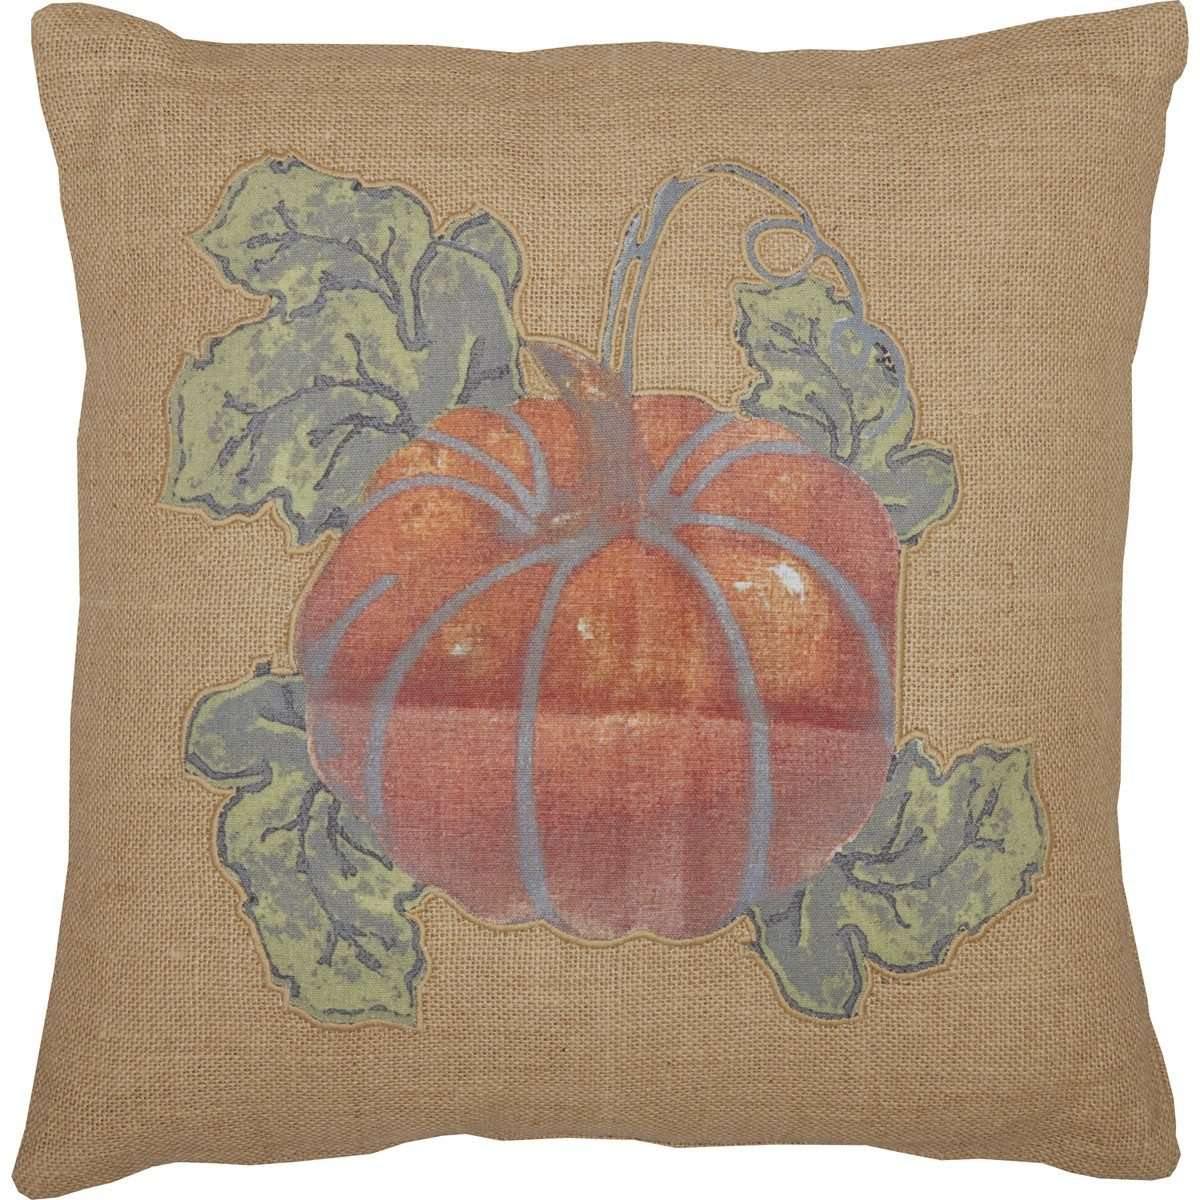 Jute Burlap Natural Harvest Garden Pumpkin Pillow 18x18 VHC Brands - The Fox Decor